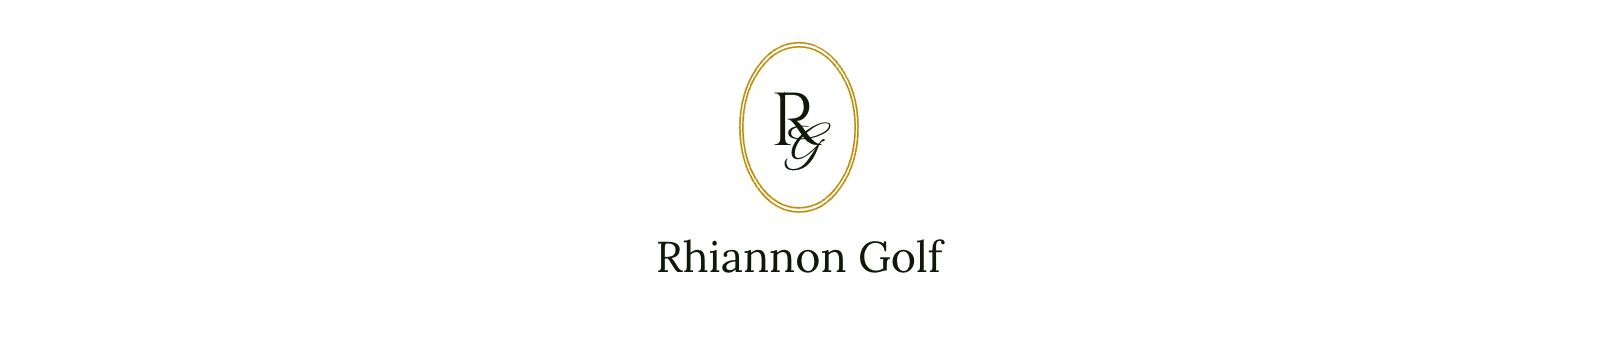 Rhiannon Golf